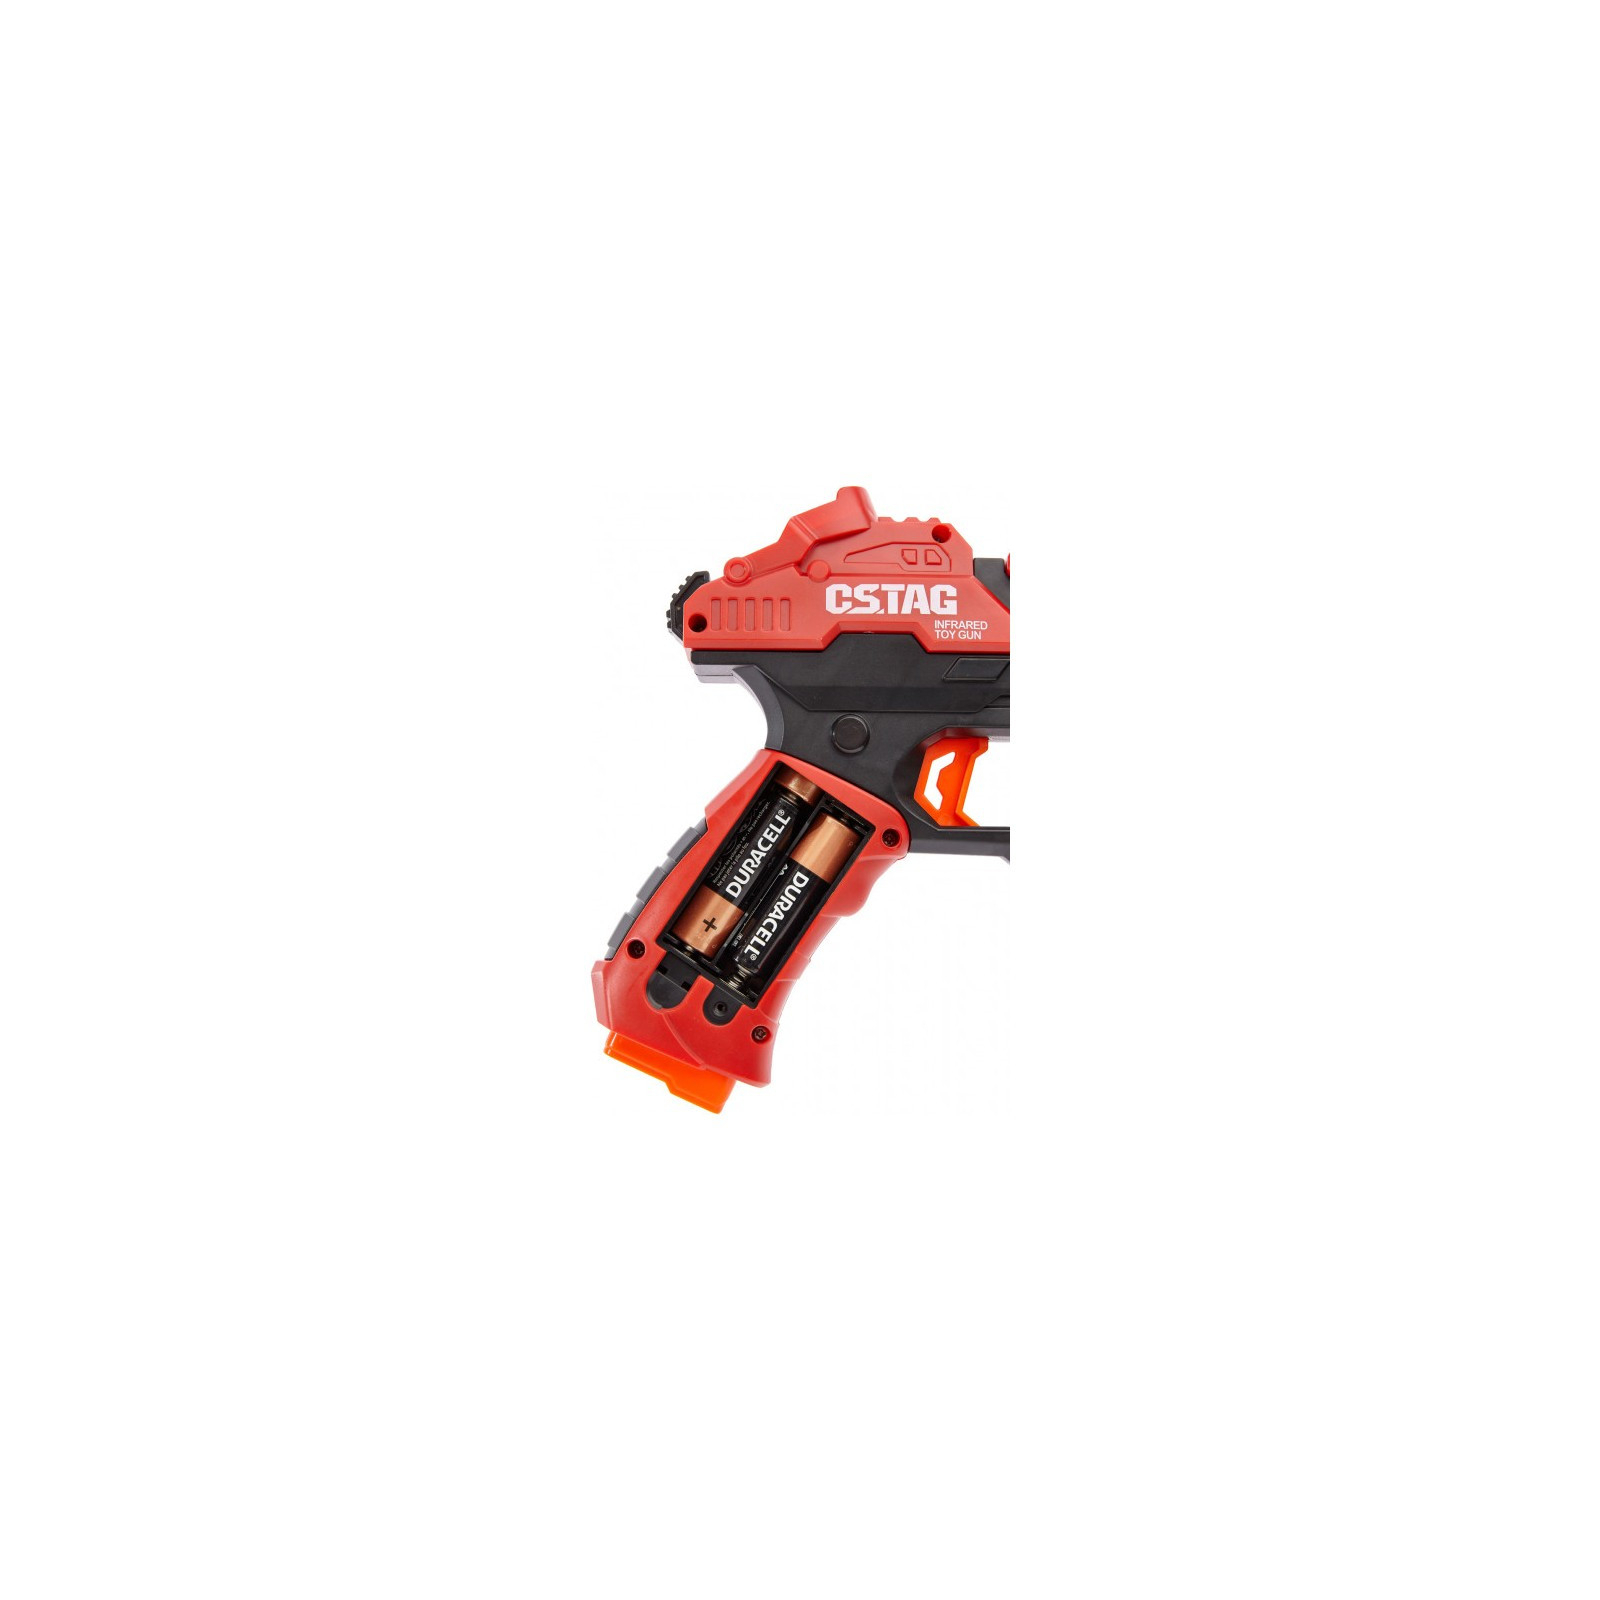 Игрушечное оружие Canhui Toys набор лазерного оружия Laser Guns CSTAG 2 пистолета (BB8913A) изображение 5